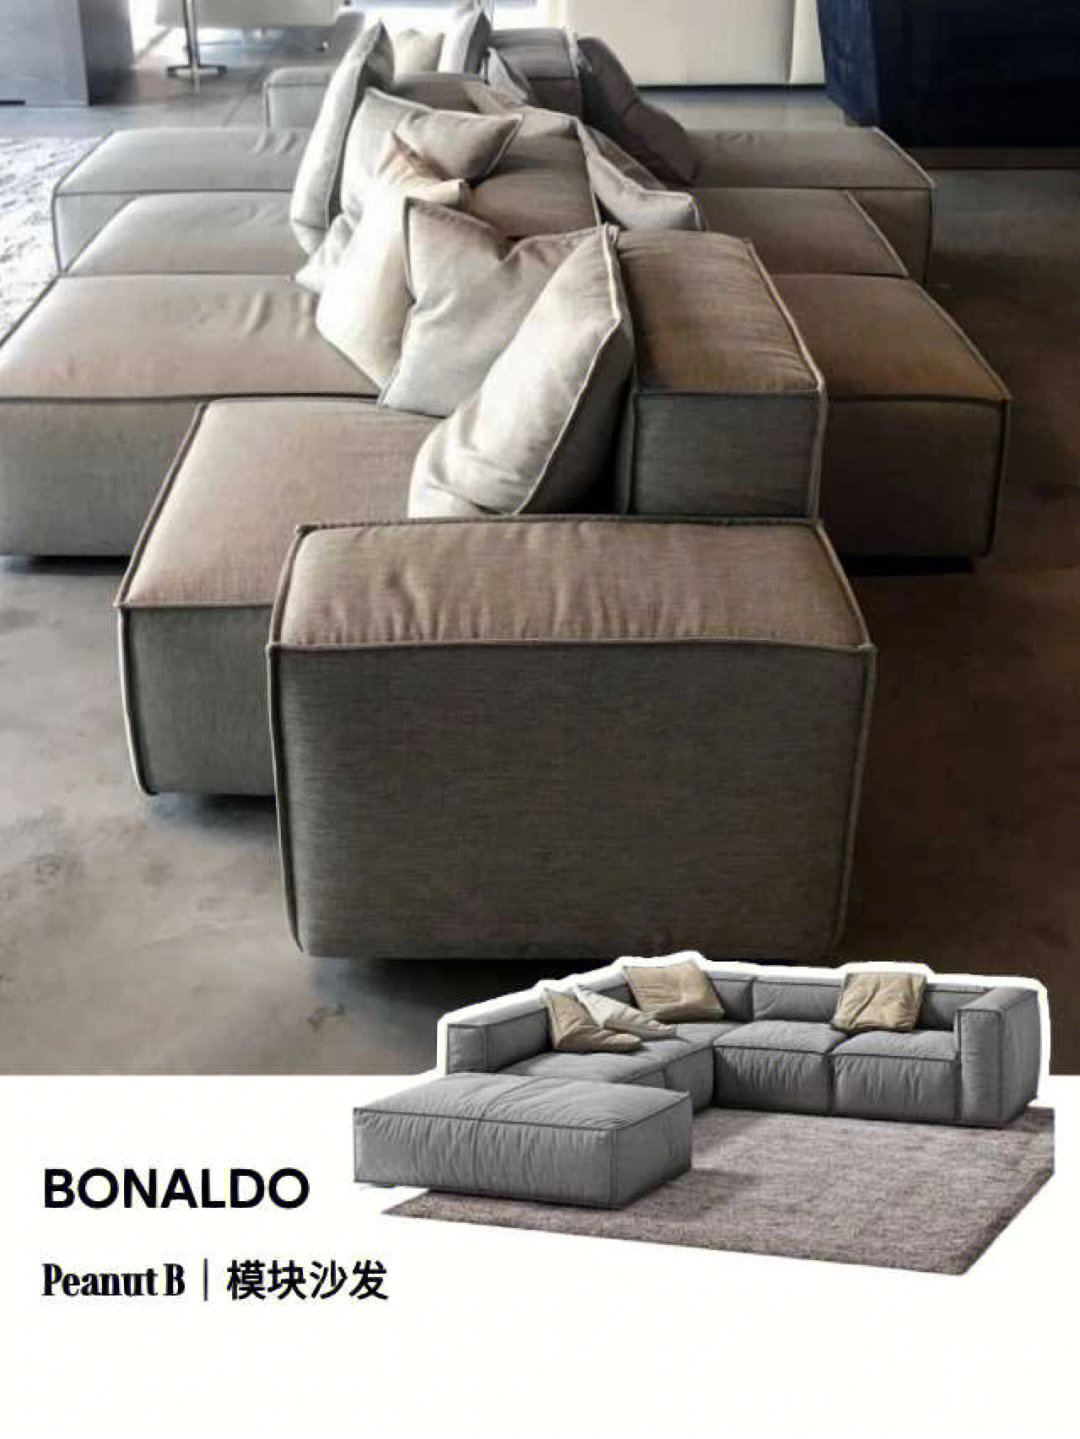 [星r]peanut b沙发是意大利品牌bonaldo的经典模块沙发,它既能满足靠